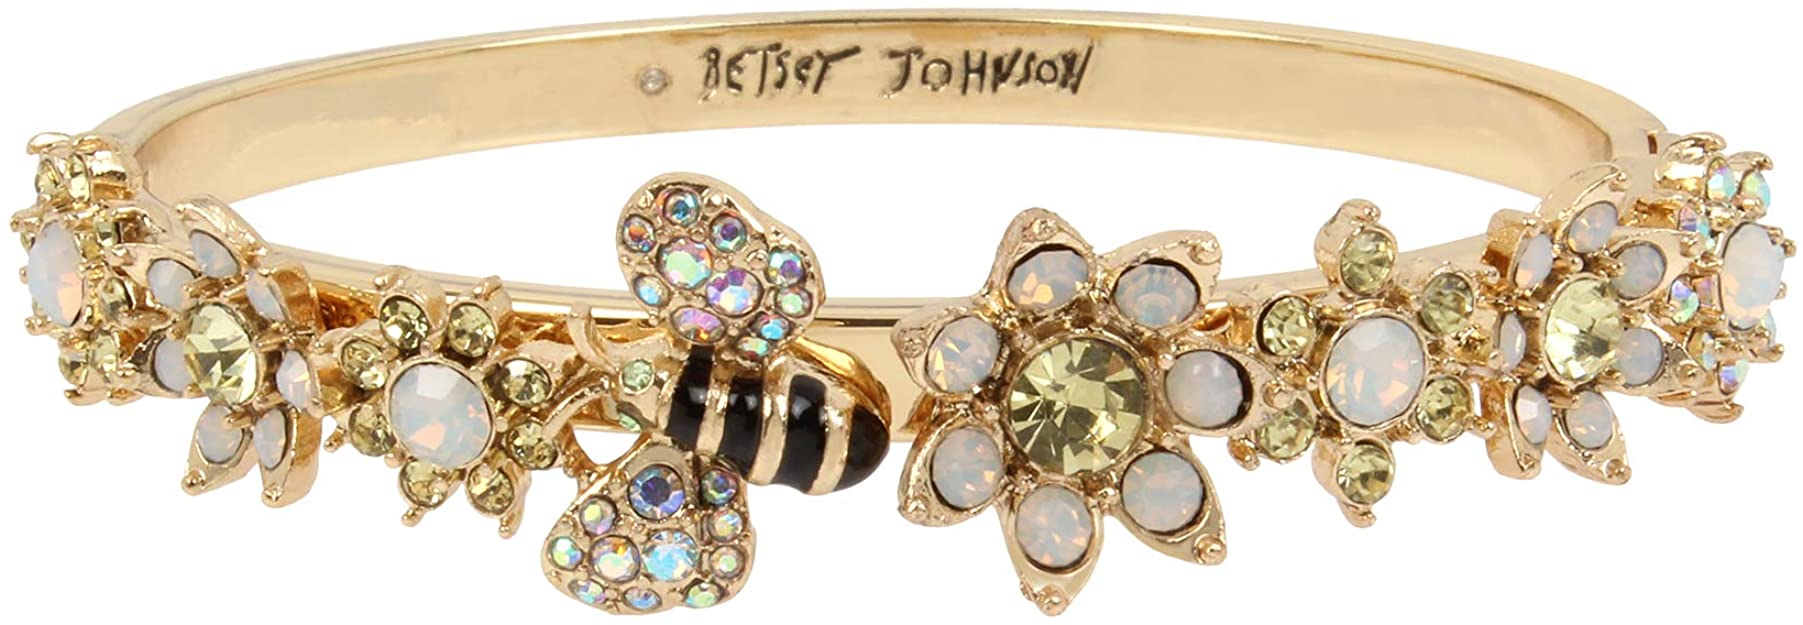 Betsey Johnson Bumble Bee & Mixed Flower Hinged Bangle Bracelet